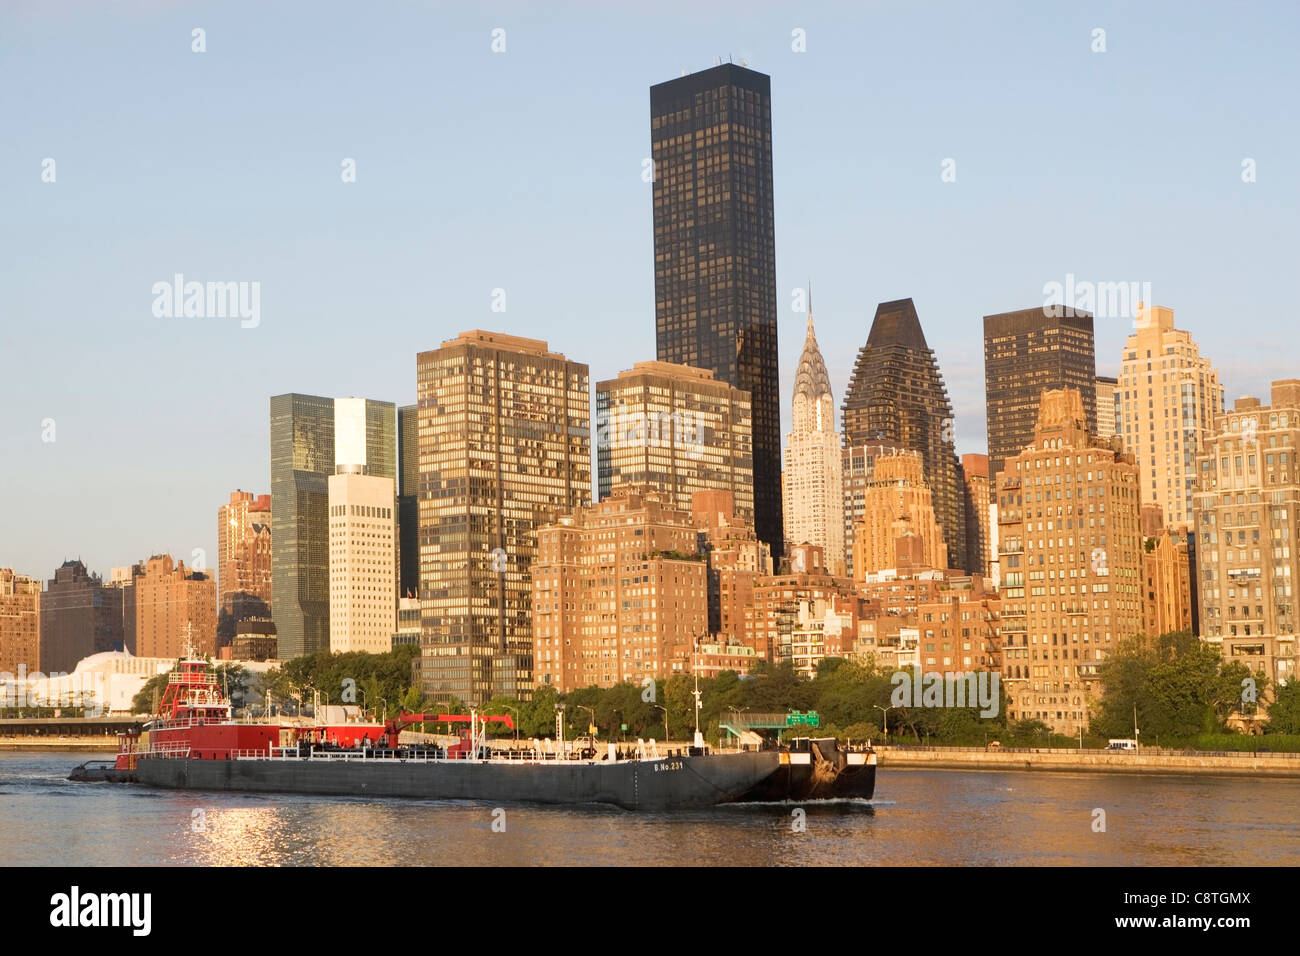 USA, New York State, New York City, Manhattan, Skyscrapers of Manhattan Stock Photo